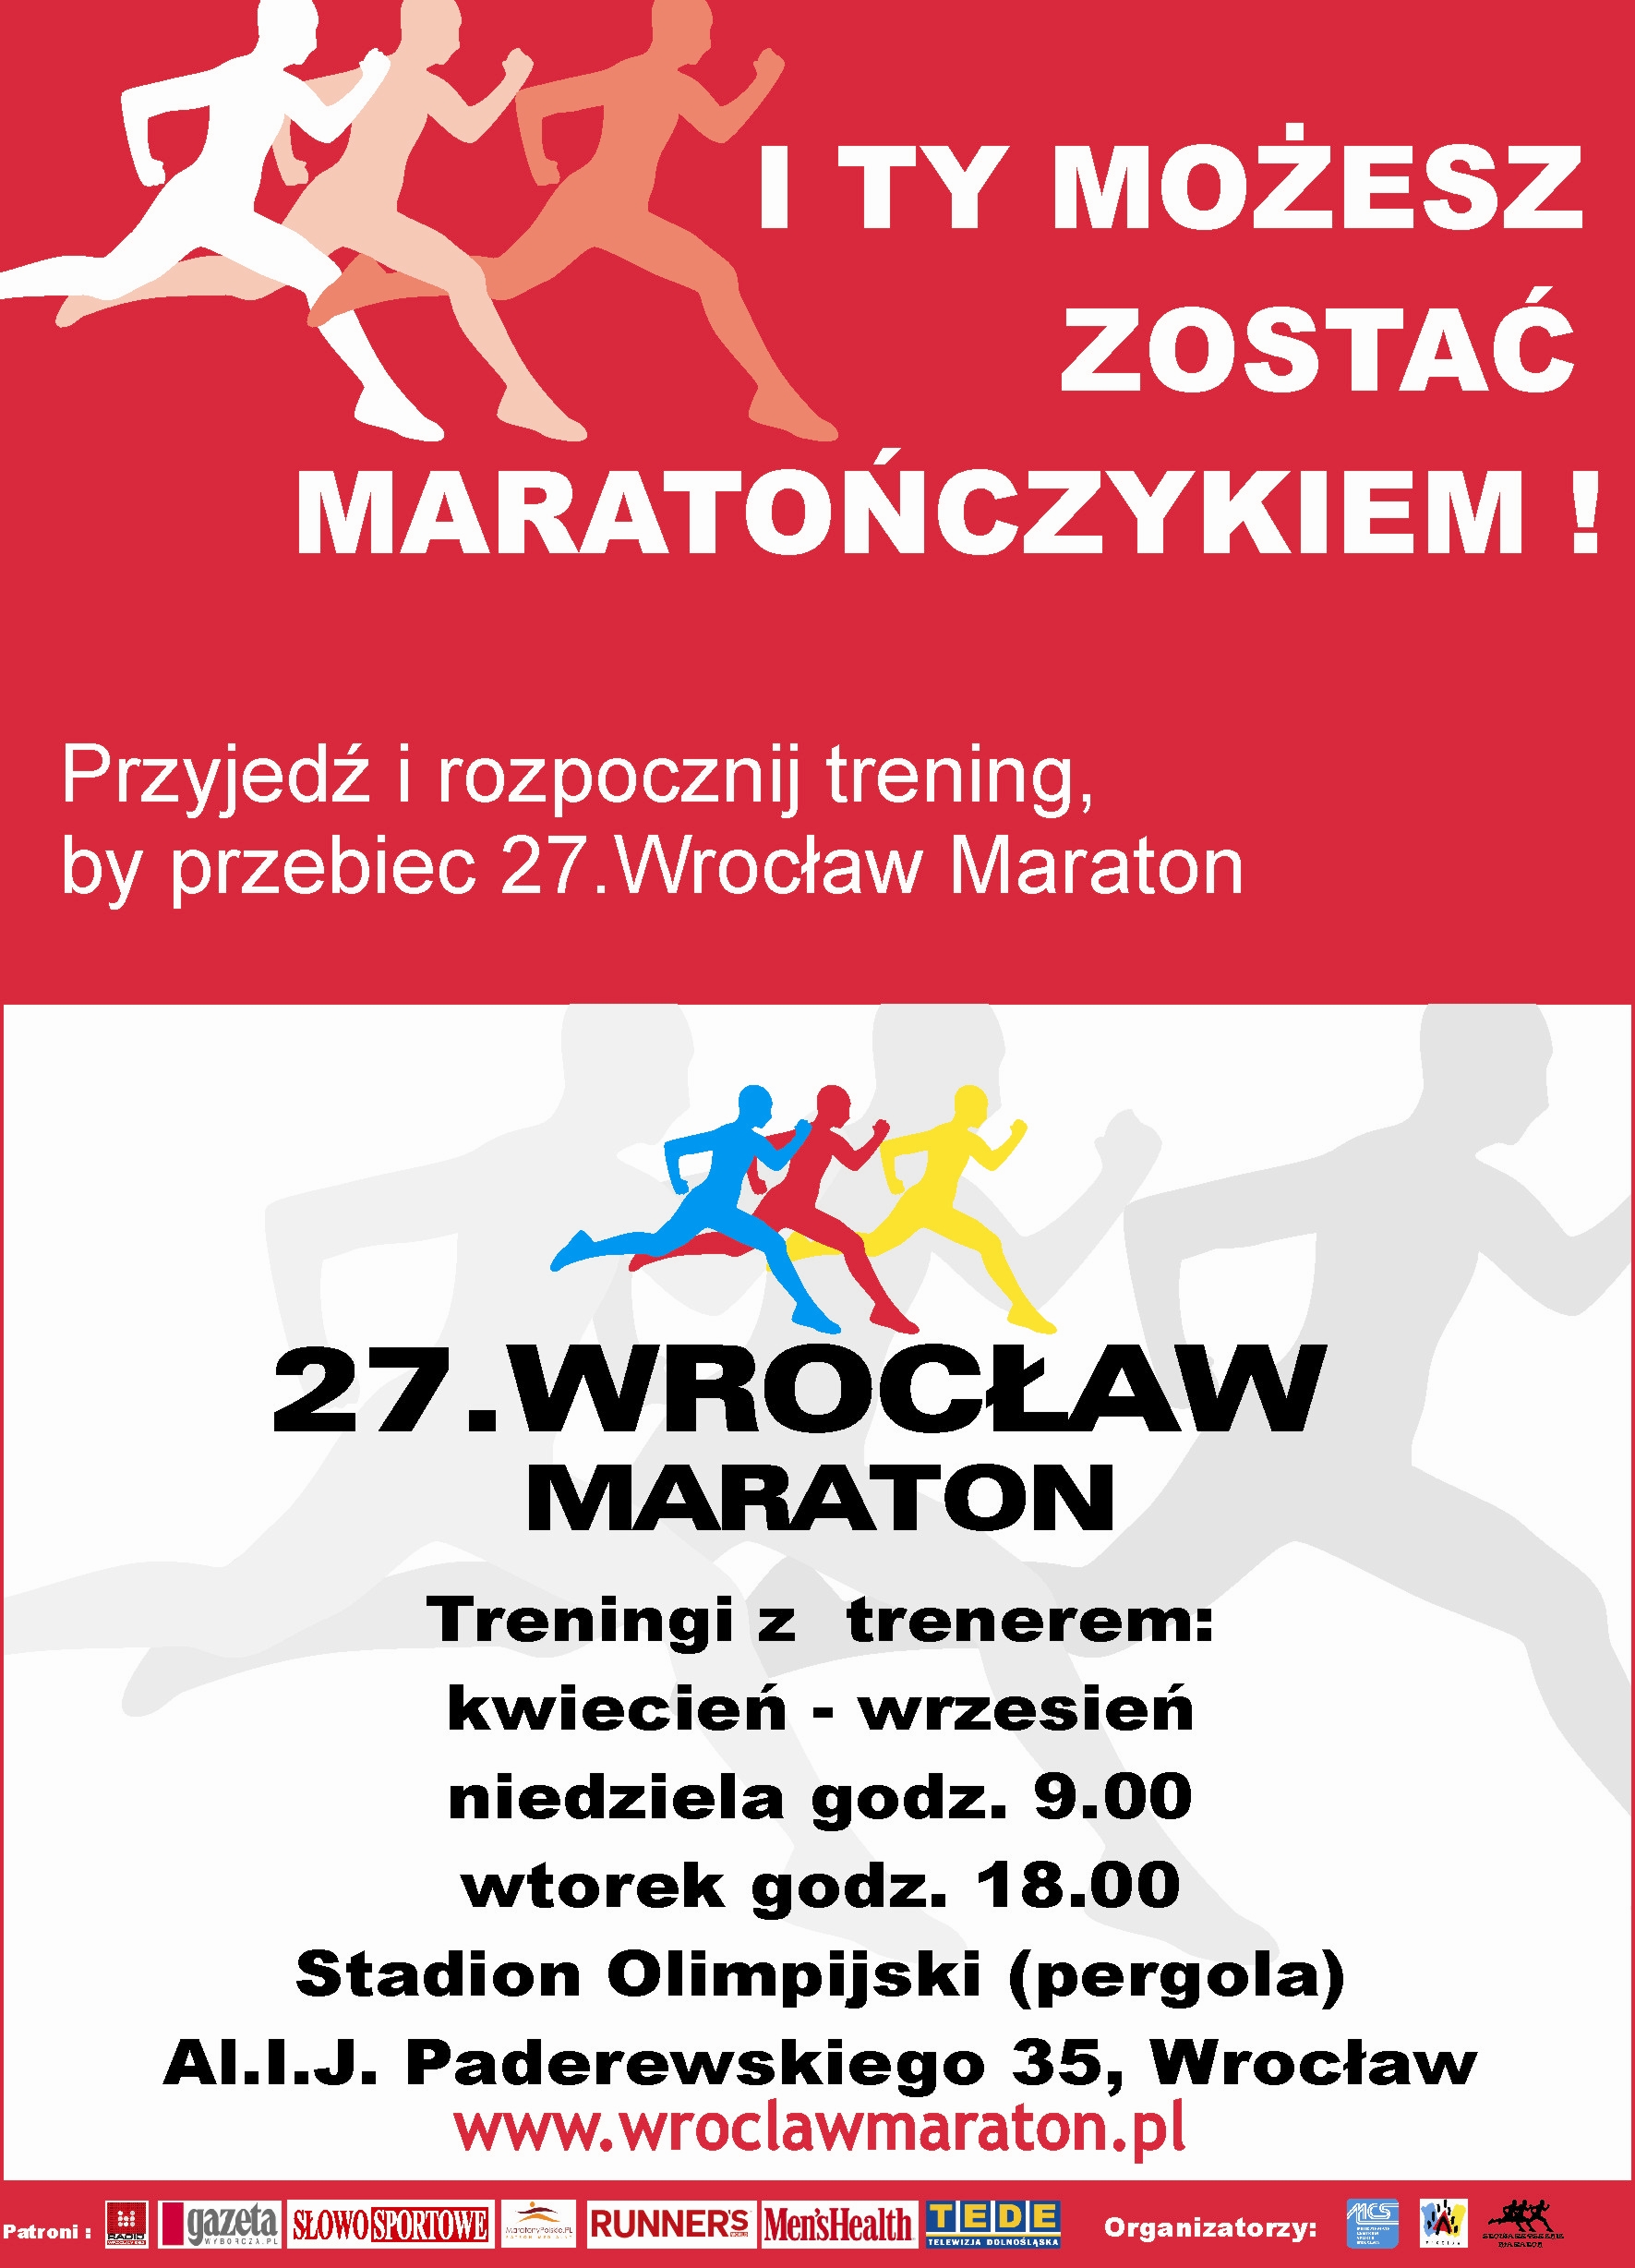 Trwają przygotowania do 27. Wrocław Maratonu - 